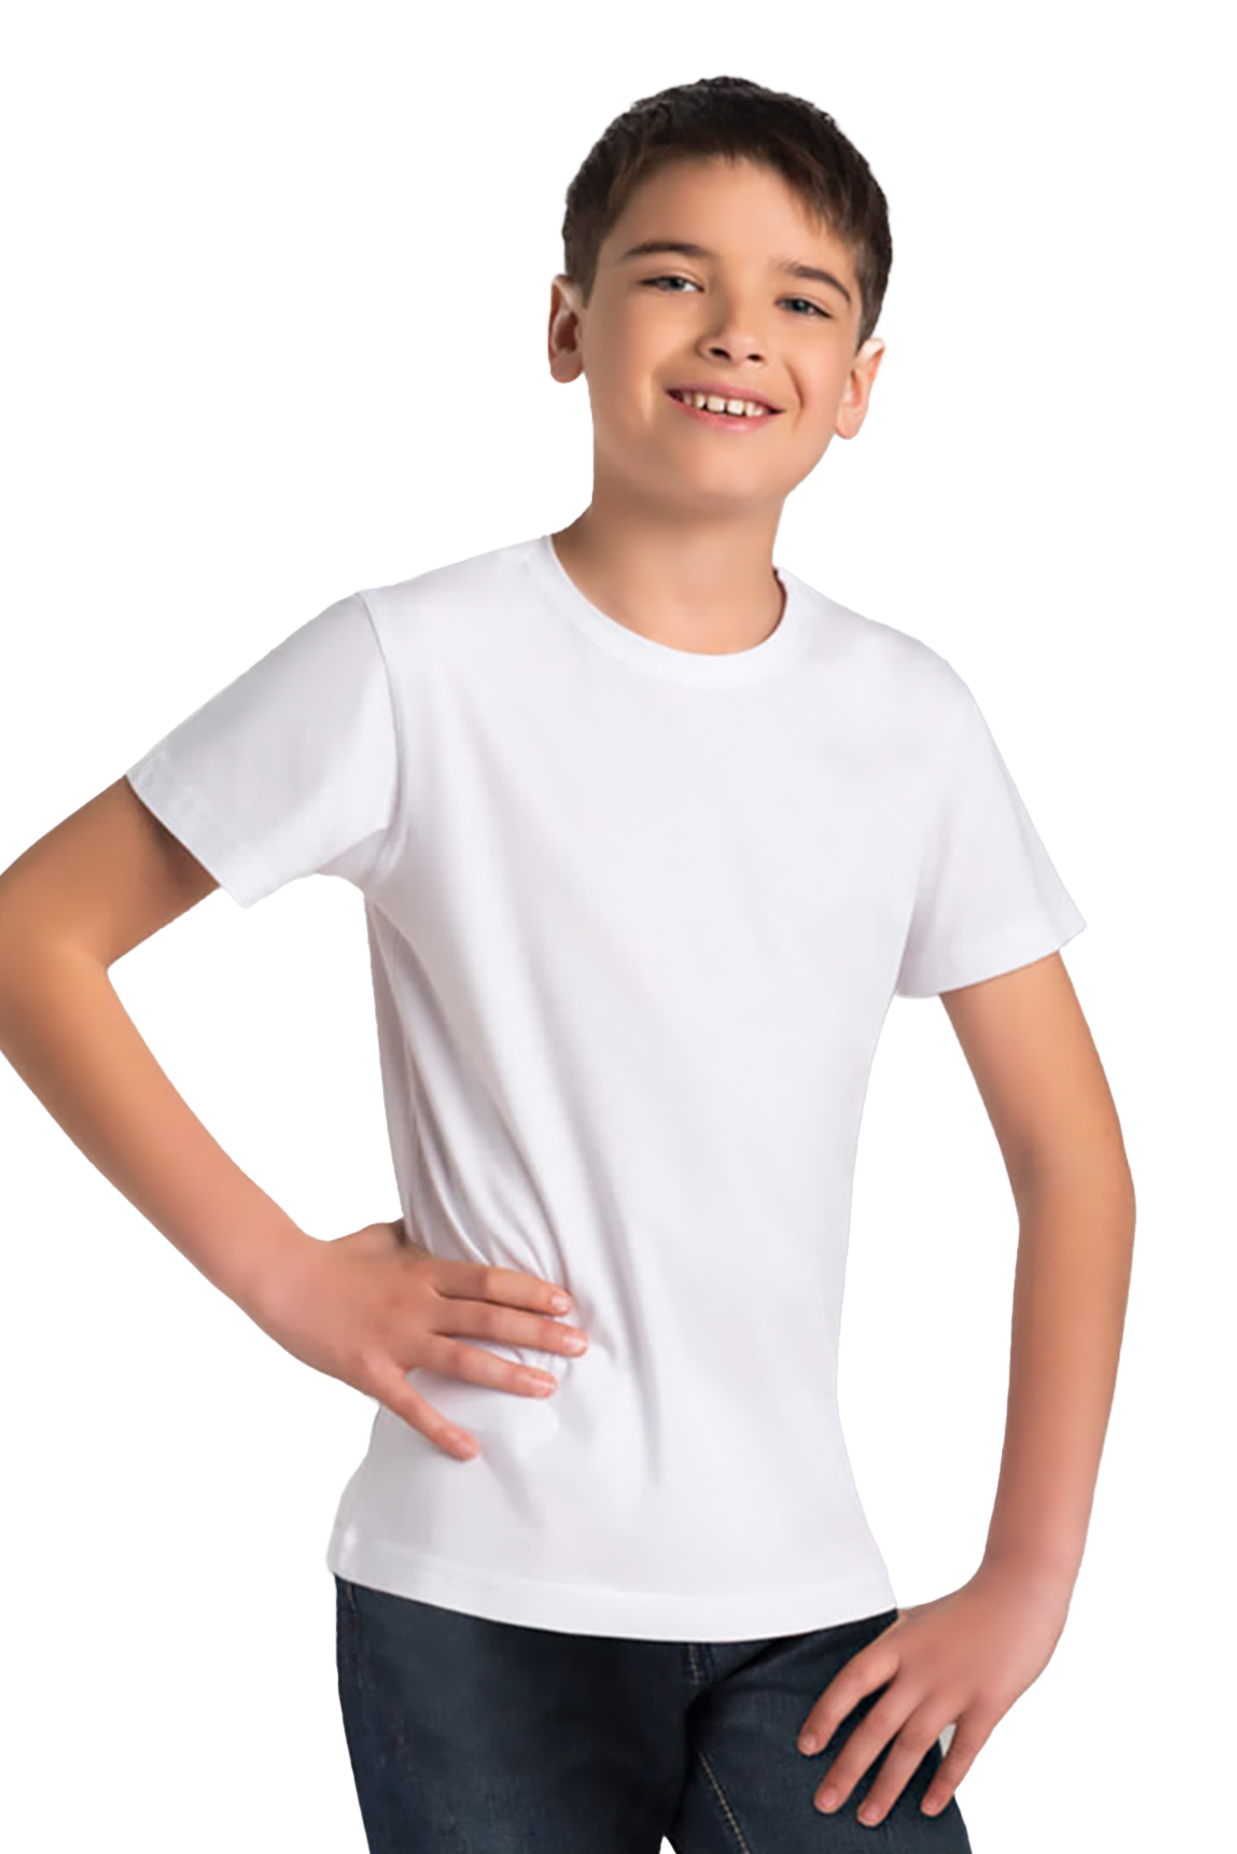 T-shirt dziecięcy, slim, biały, Tup Tup